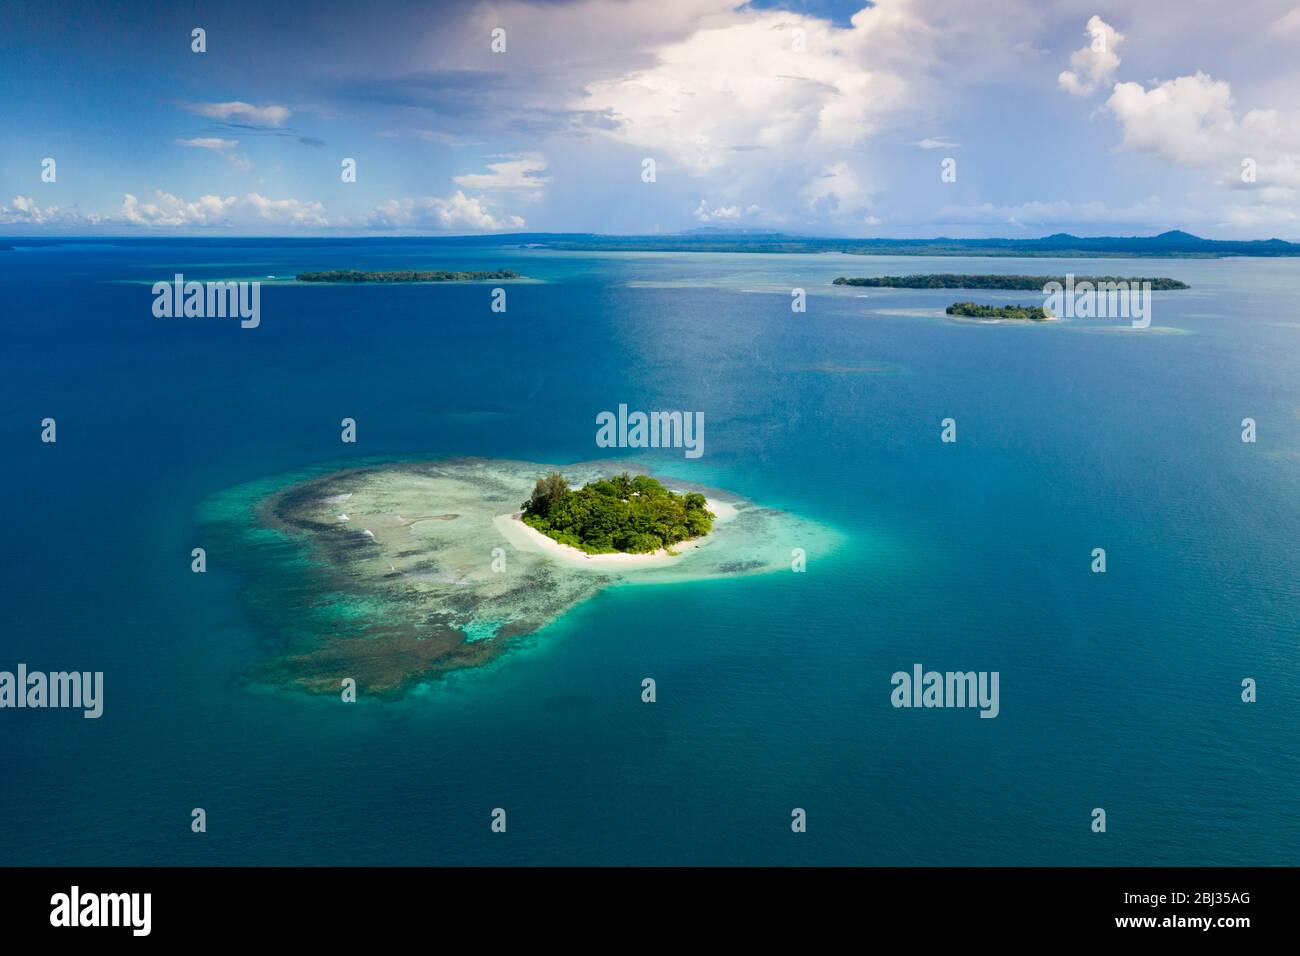 Vue aérienne des îles de la baie Balgai, Nouvelle-Irlande, Papouasie-Nouvelle-Guinée Banque D'Images